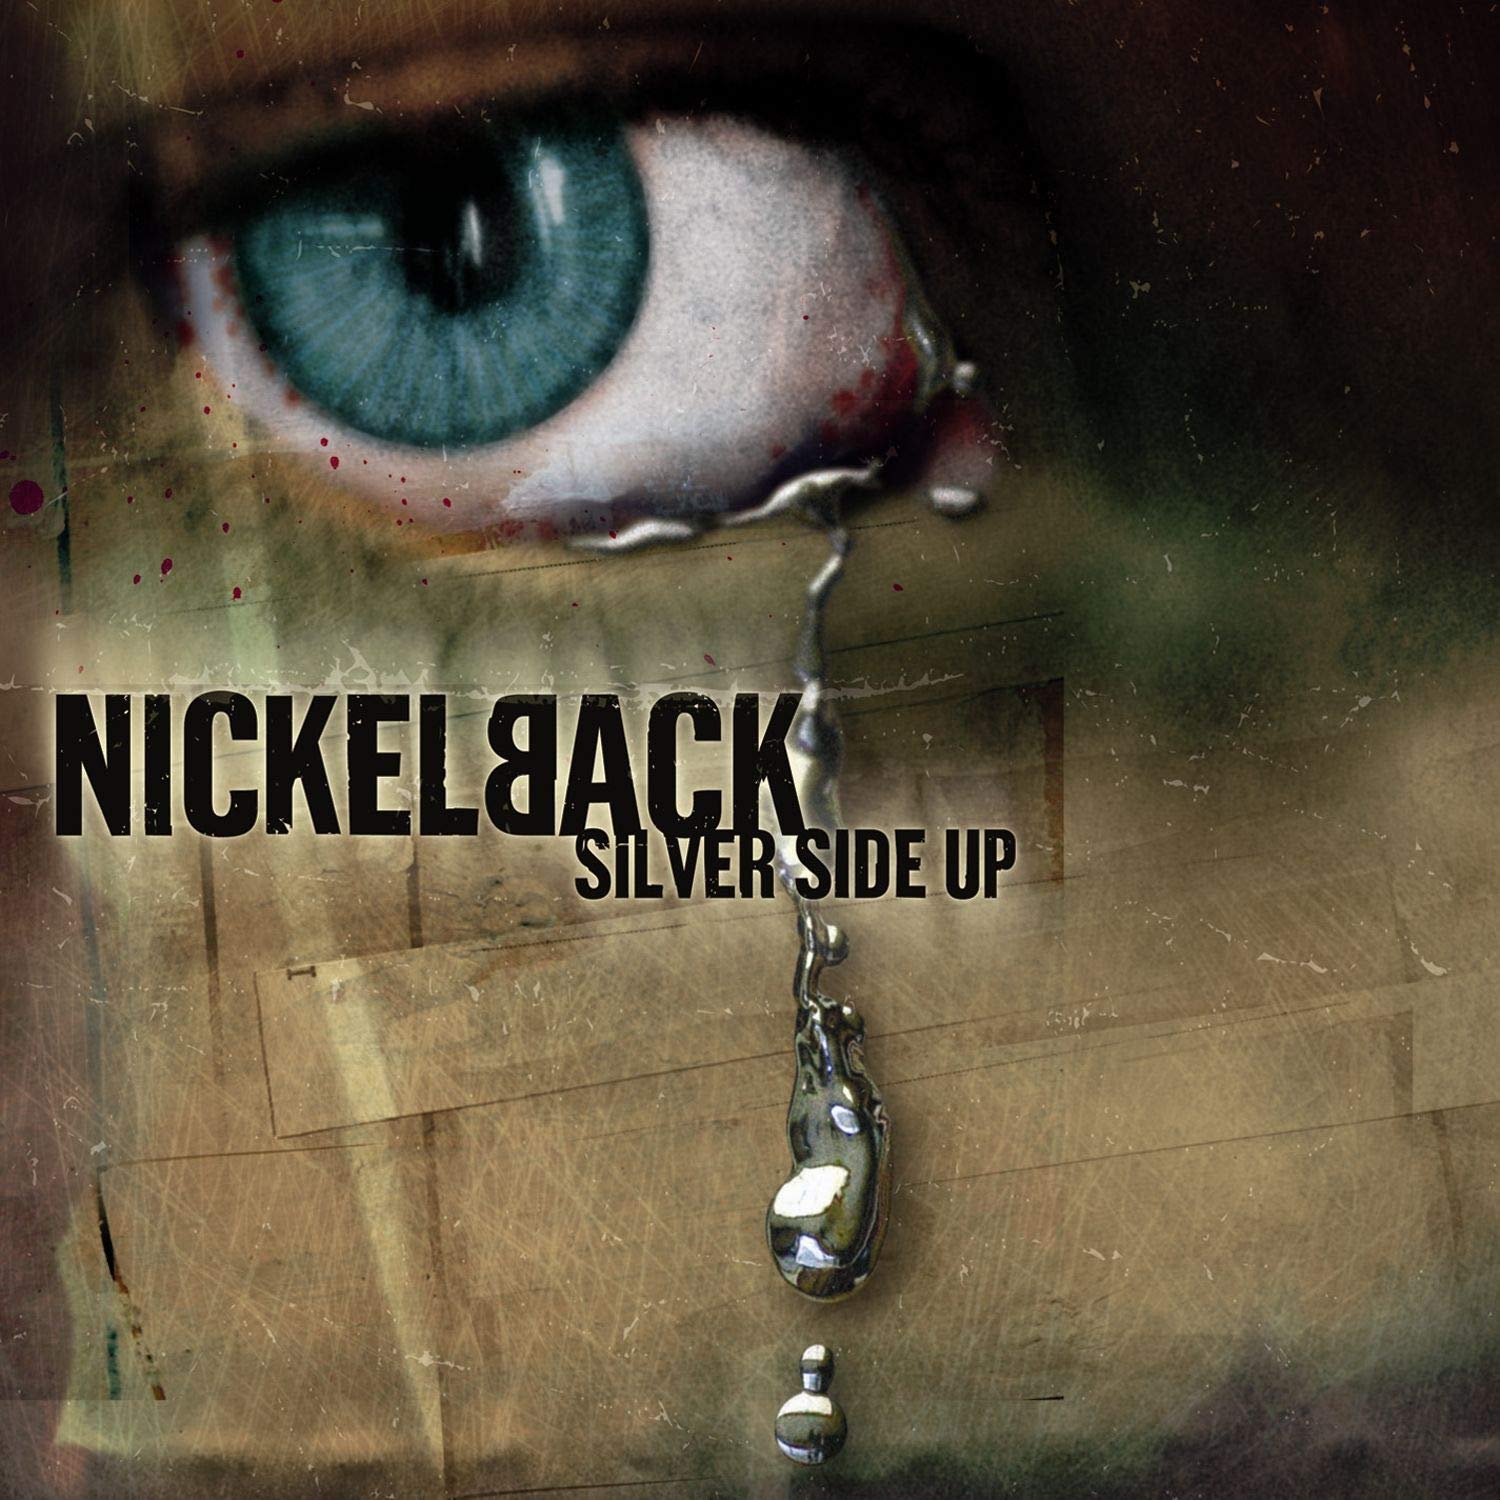 Canciones Traducidas: How You Remind Me – Nickelback